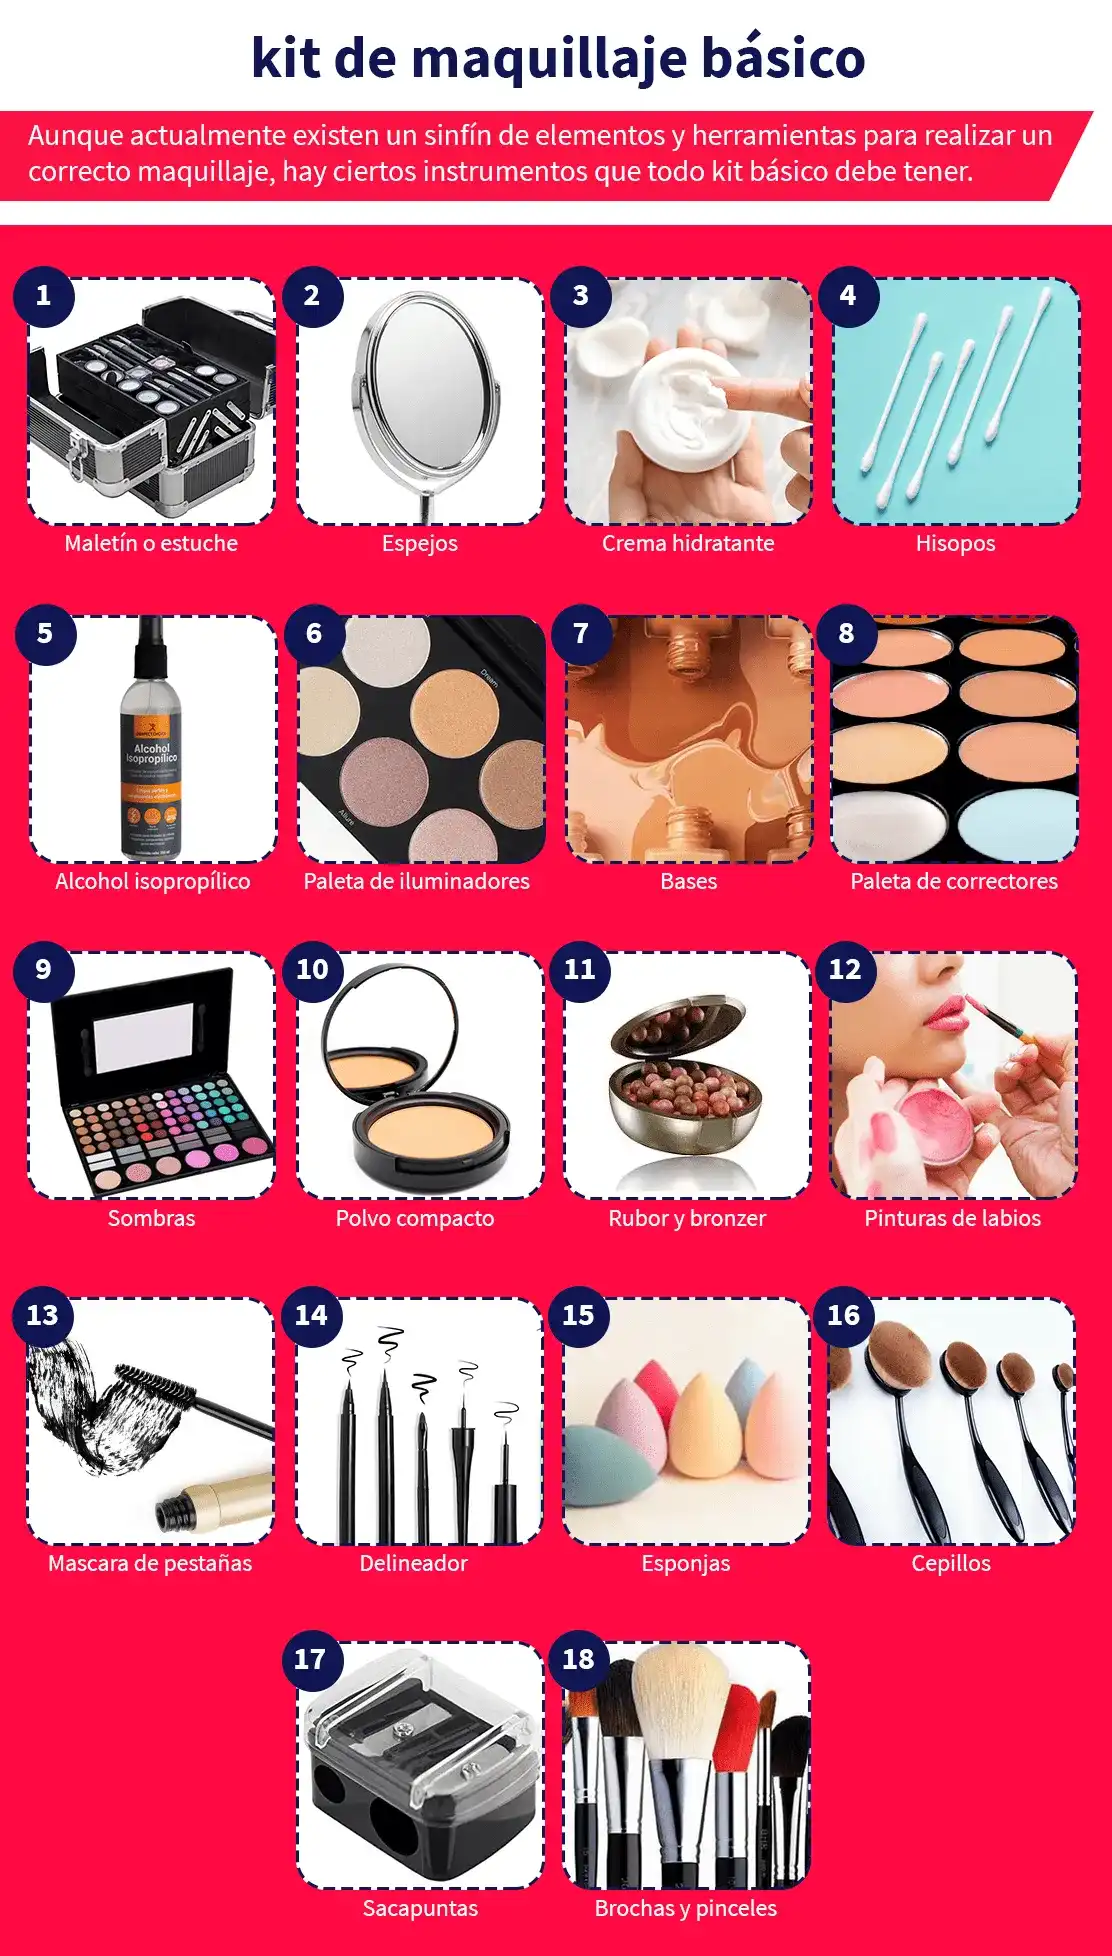 herramientas y productos para crear tu kit básico de maquillaje